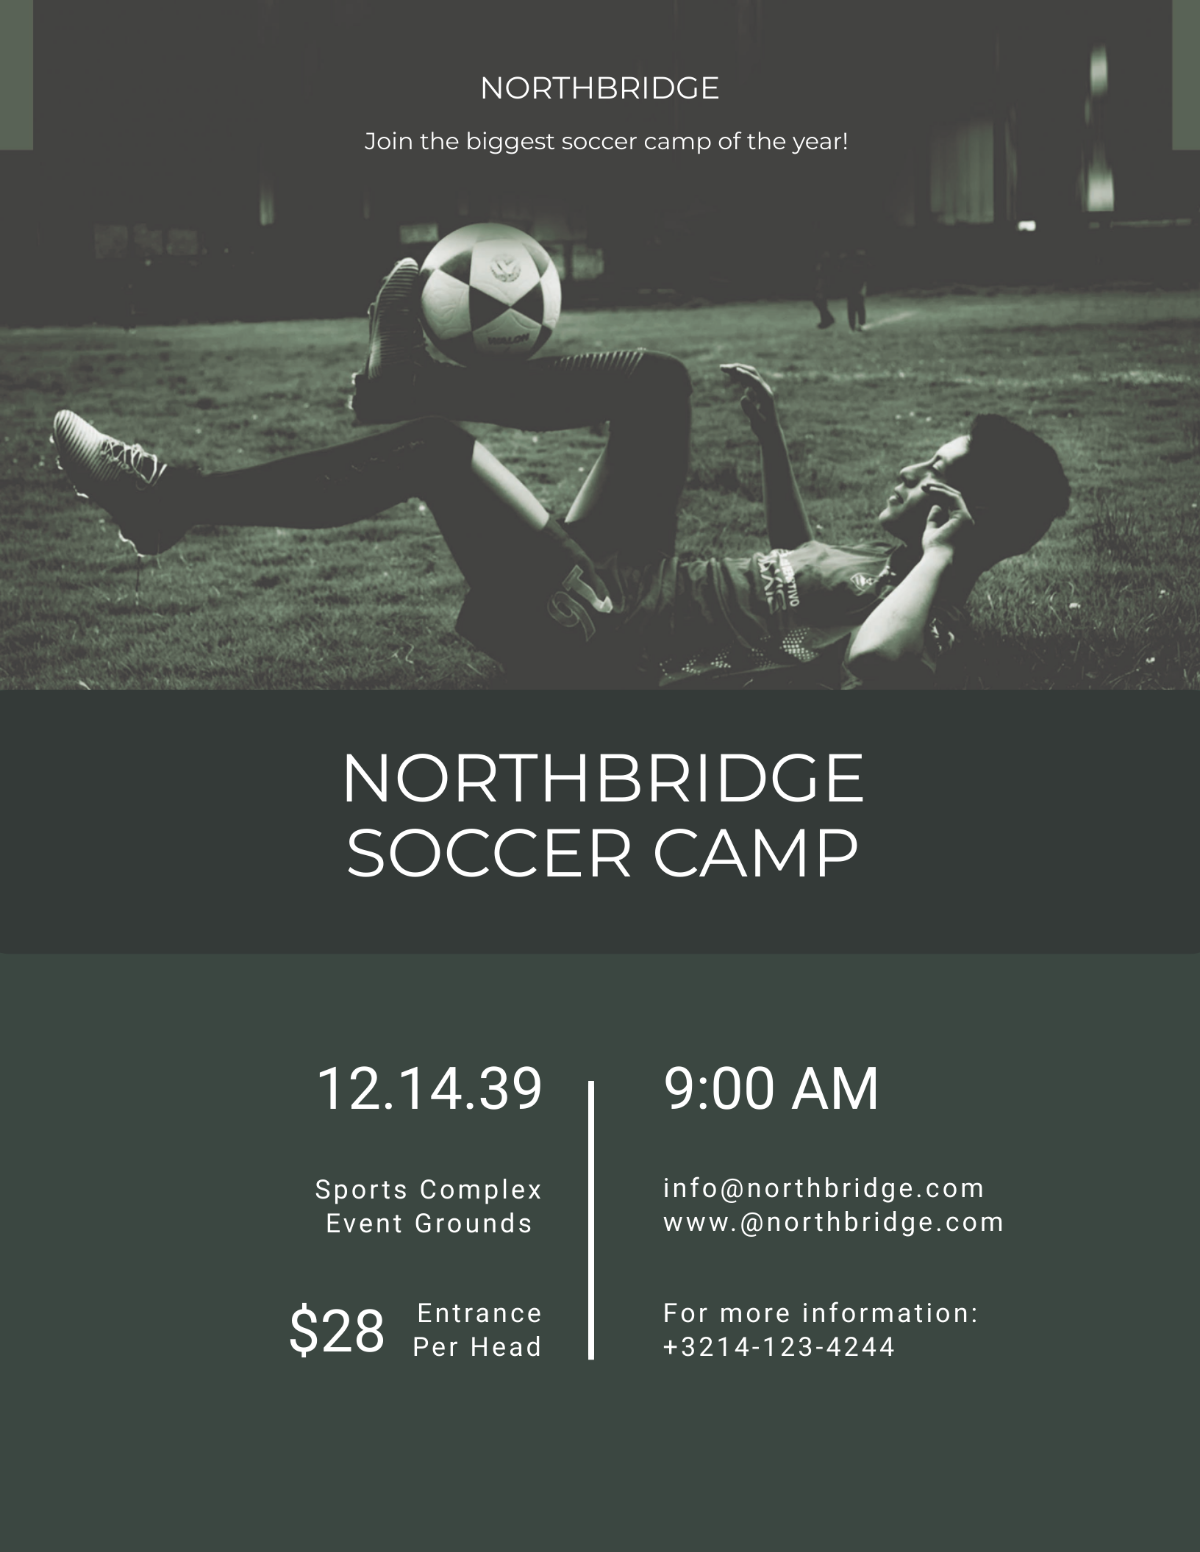 Soccer Camp Flyer